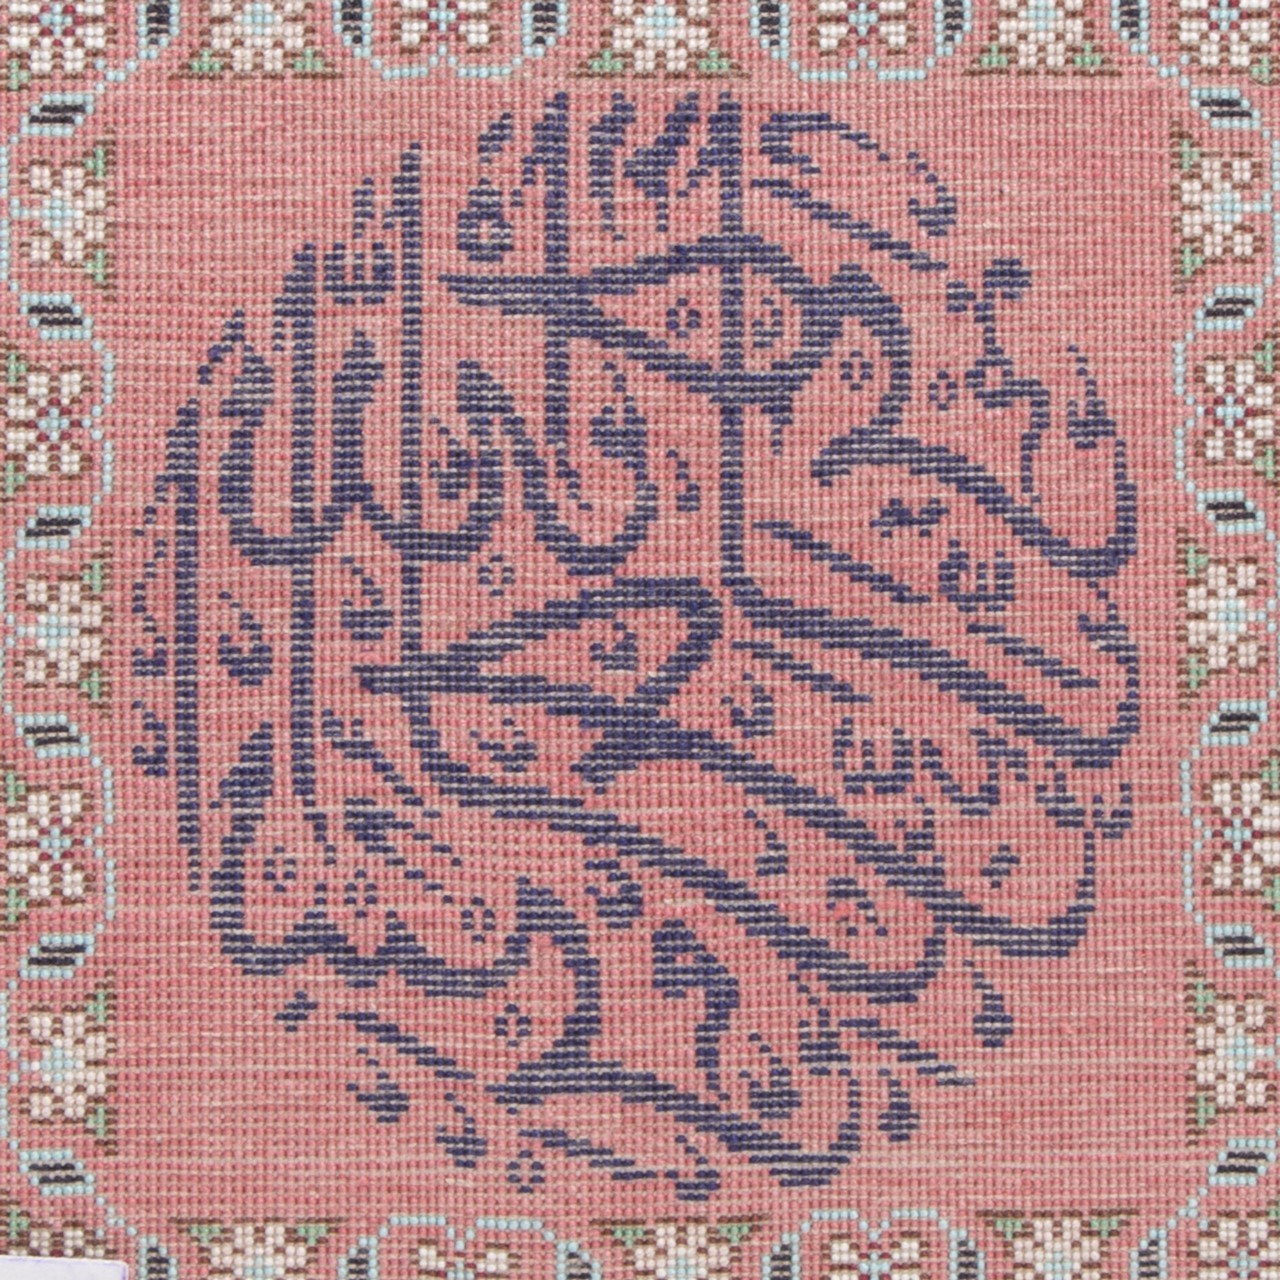 تابلو فرش دستباف بسم الله الرحمن الرحیم کد 901419